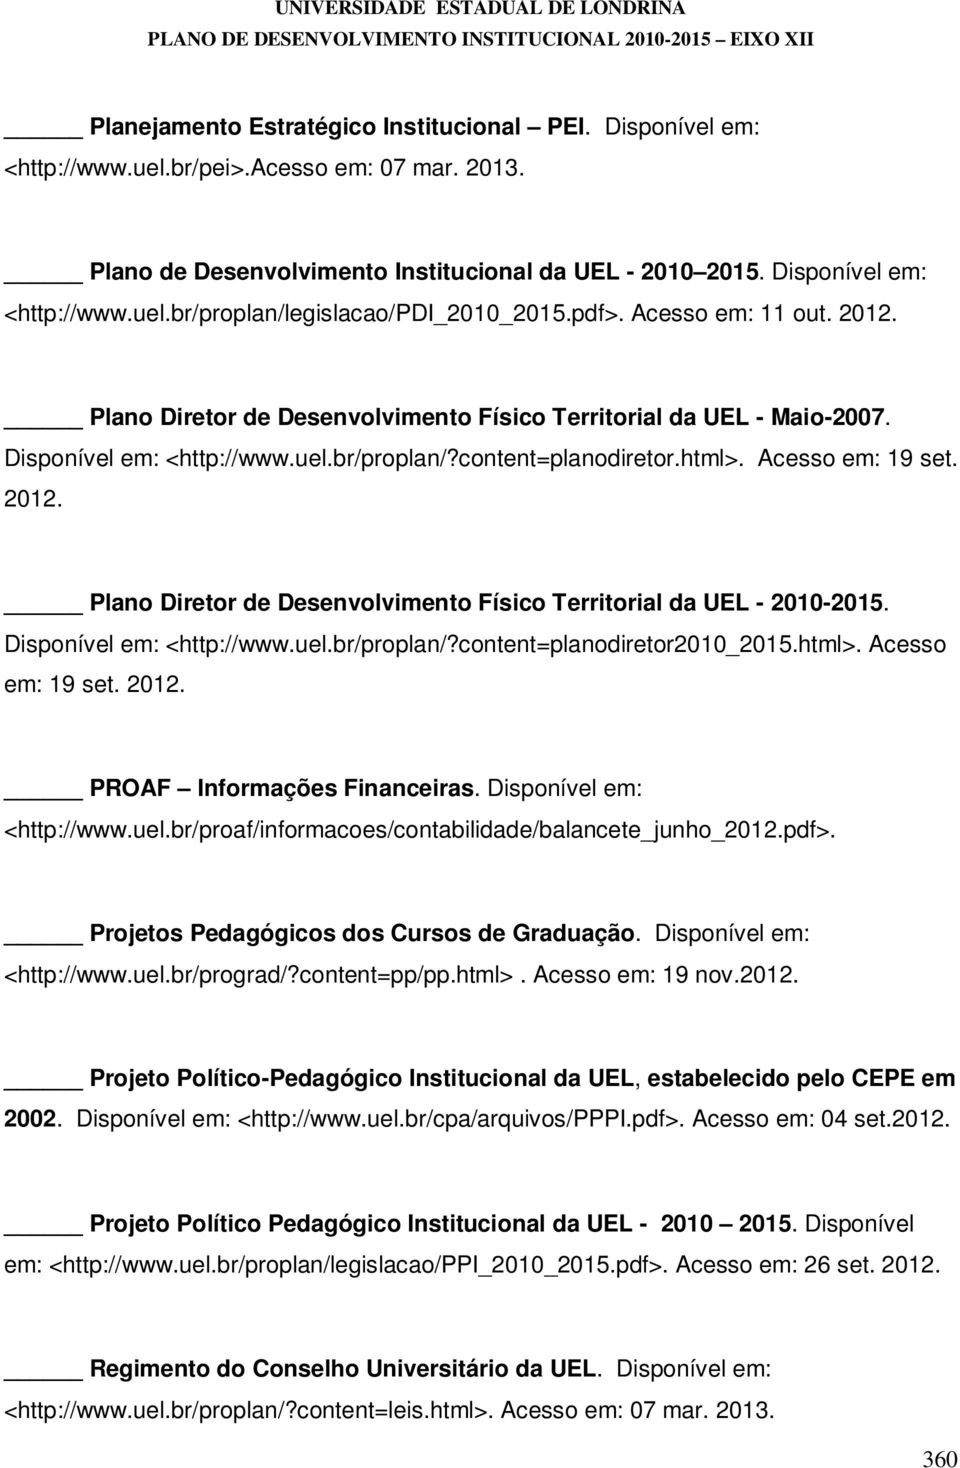 Plano Diretor de Desenvolvimento Físico Territorial da UEL - Maio-2007. Disponível em: <http://www.uel.br/proplan/?content=planodiretor.html>. Acesso em: 19 set. 2012.